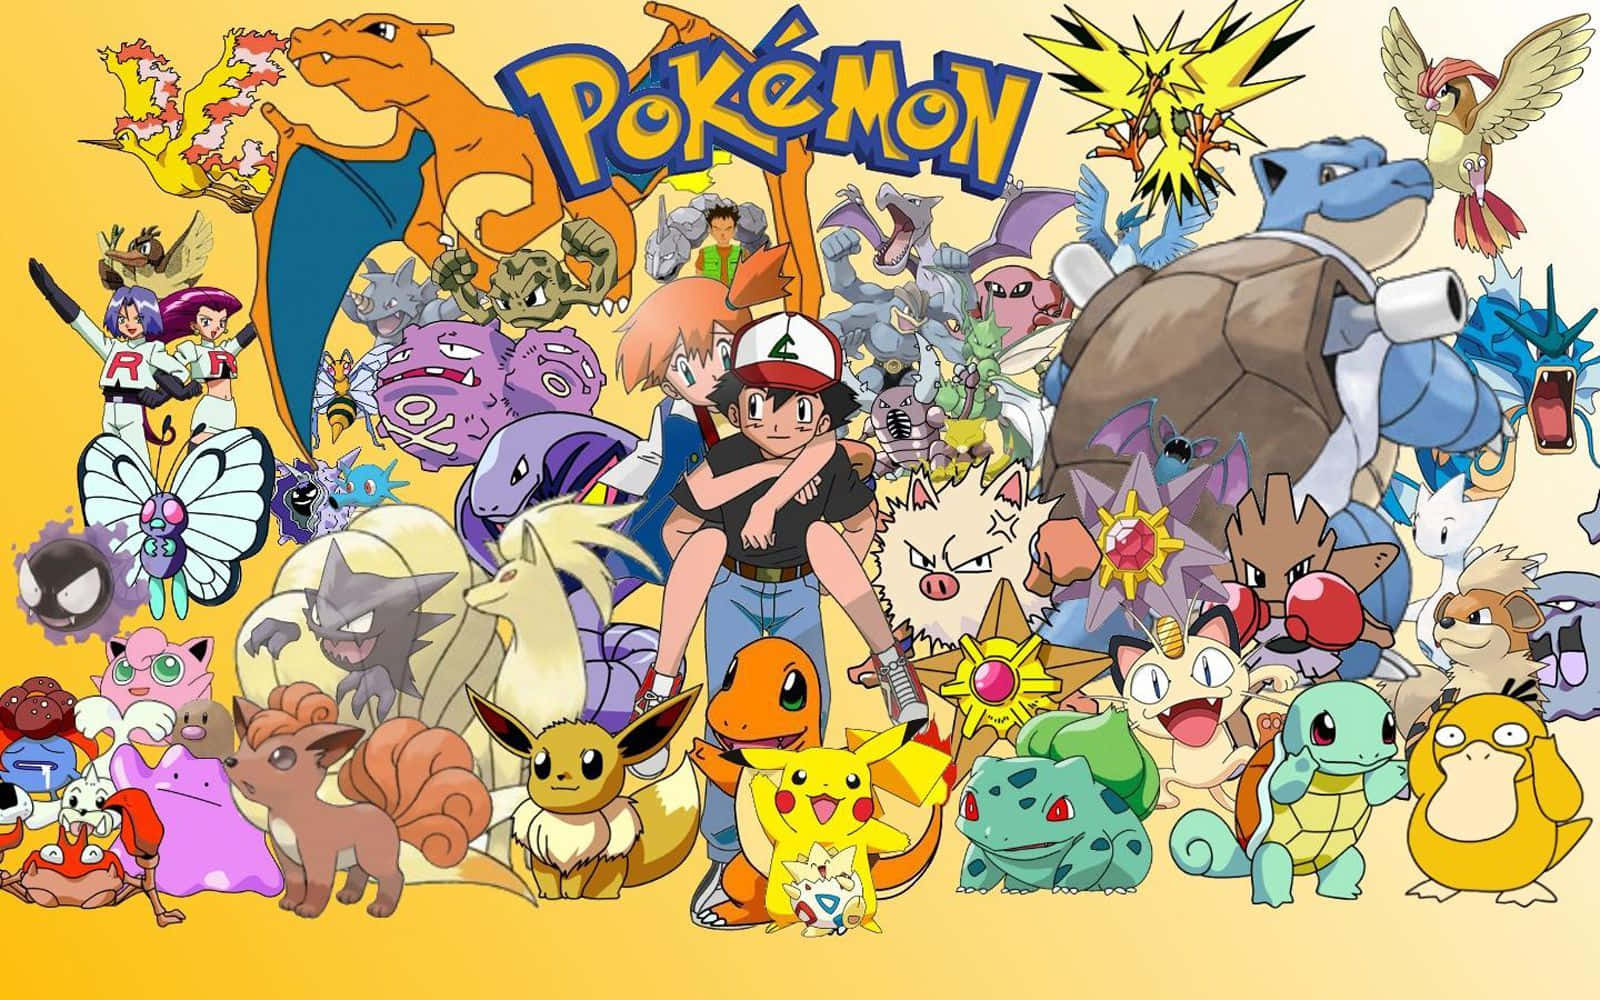 Celebrandotodos Os Pokémon Em Memória De Seu Lendário Universo.